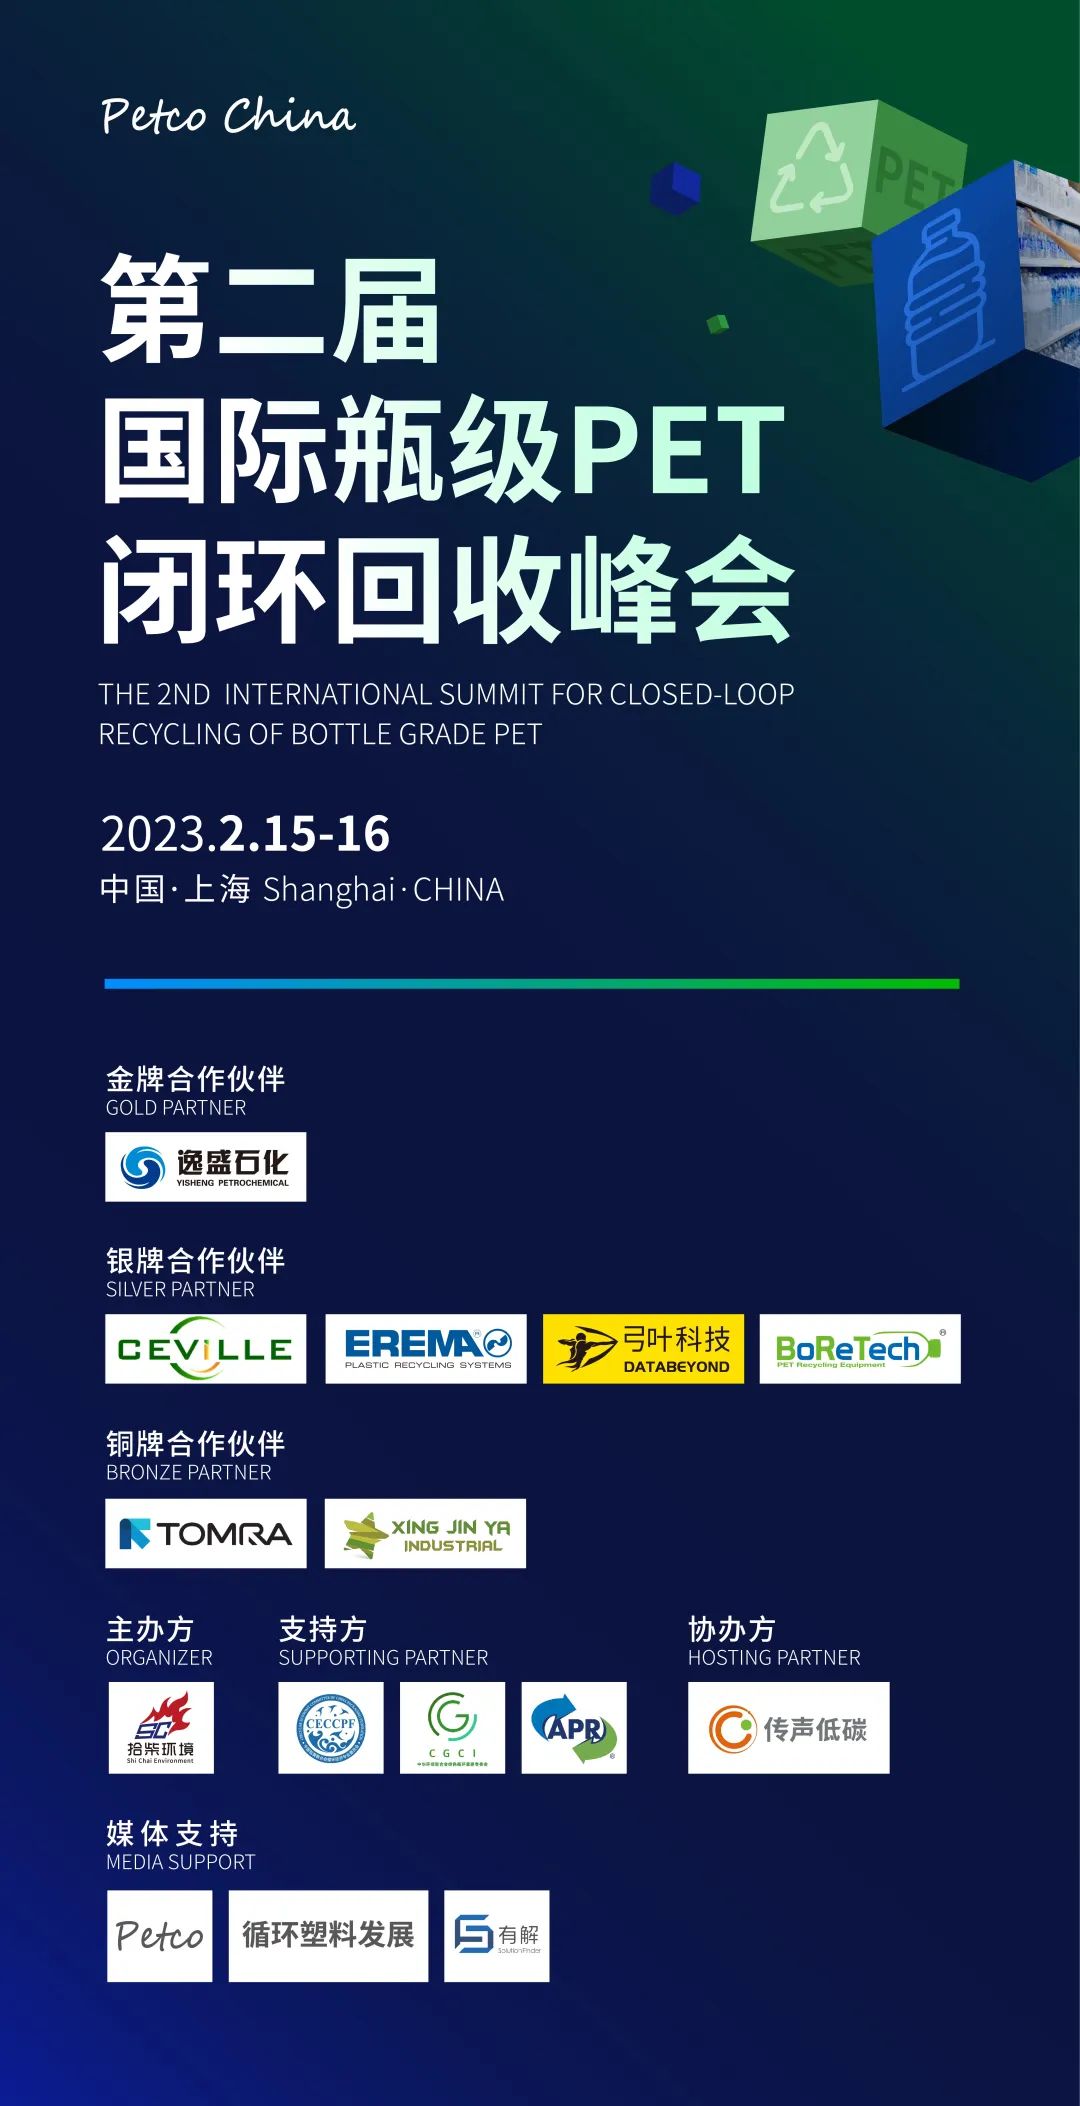 会议报名：第二届国际瓶级PET闭环回收峰会将于2月15日在上海召开 全面打造低碳盛会-有解塑料观察